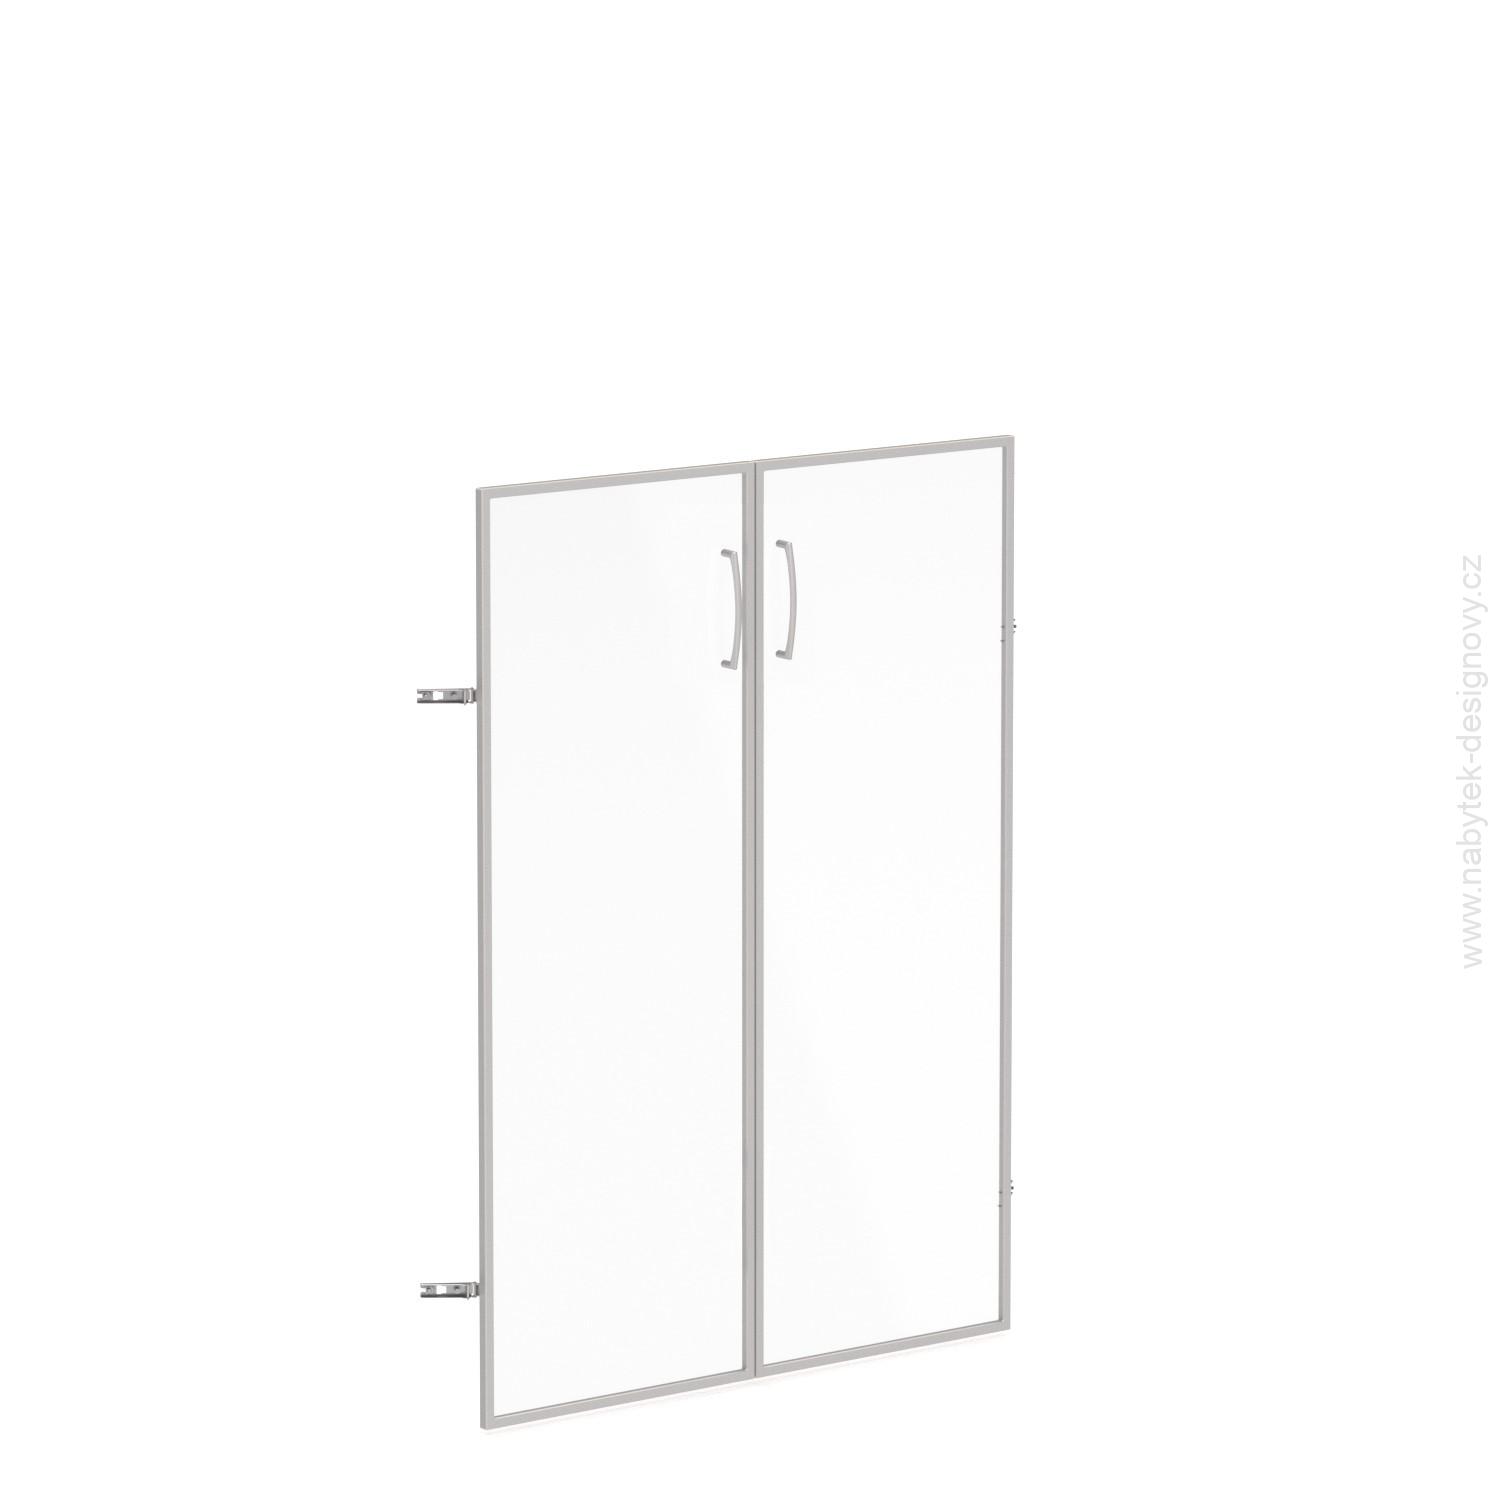 Skleněné dveře v AL rámu, výška 140,3cm, šířka 78,6cm